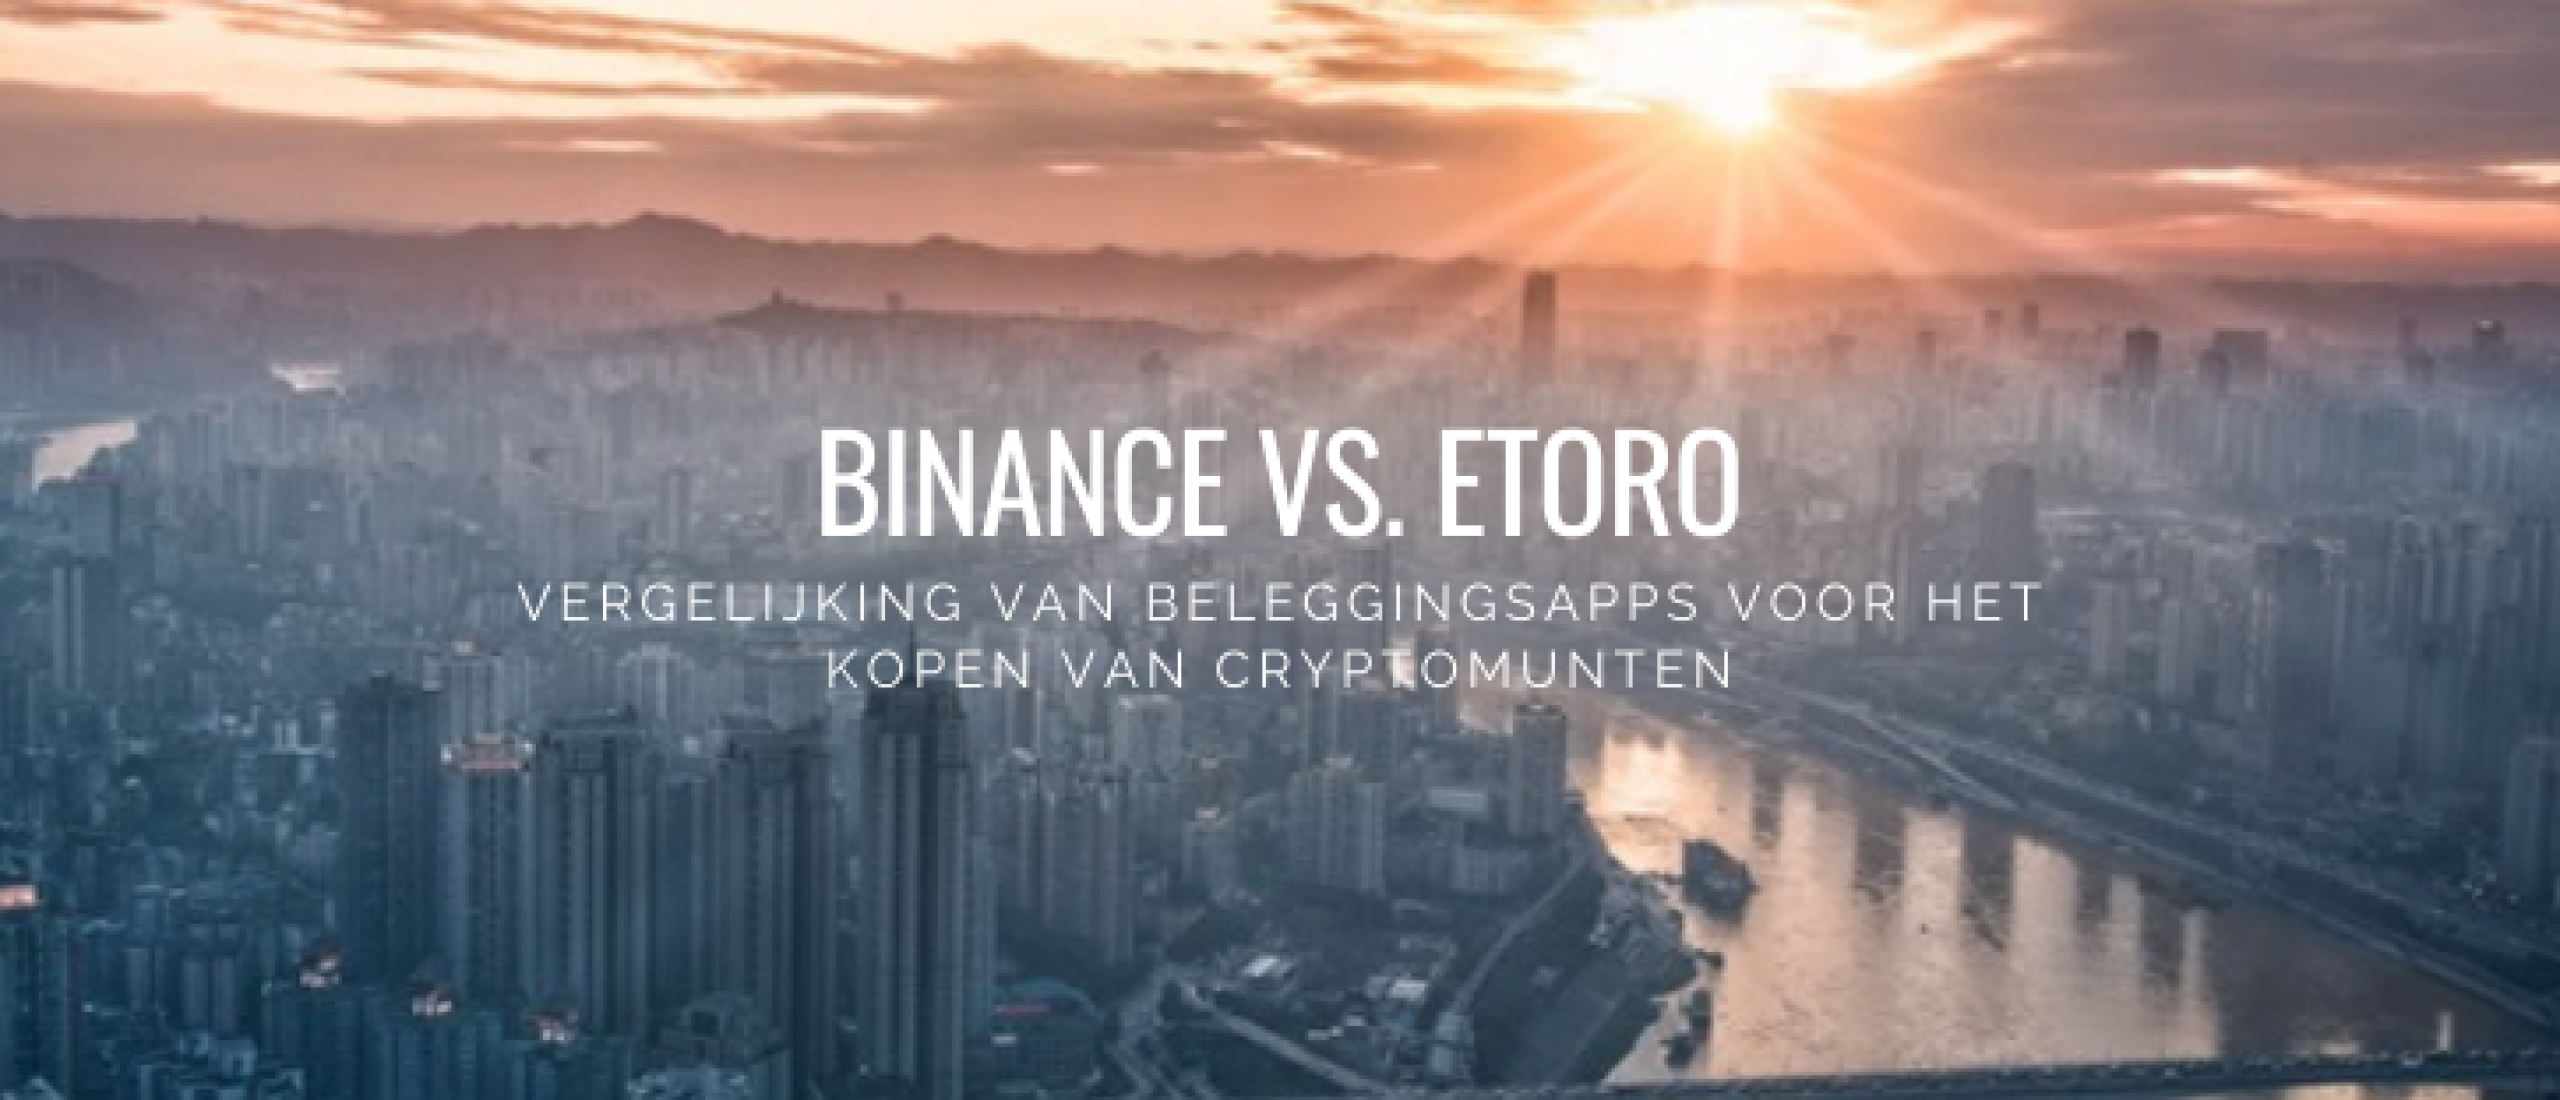 eToro vs. Binance Vergelijken voor Crypto Kopen [2022]